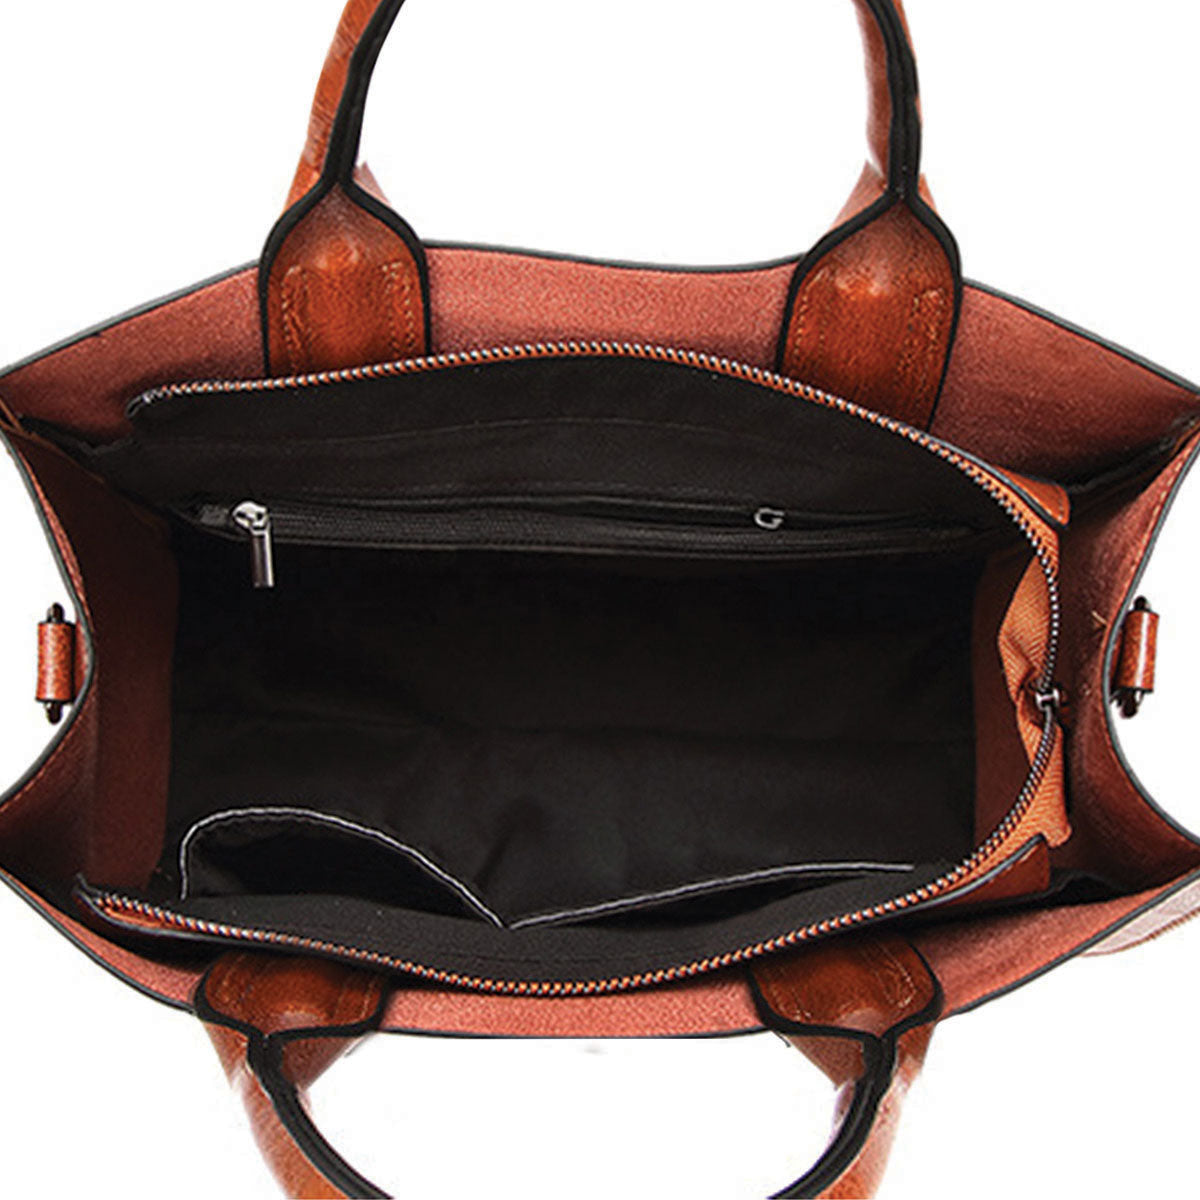 Ihr bester Begleiter – Pekingese Luxus-Handtasche V1